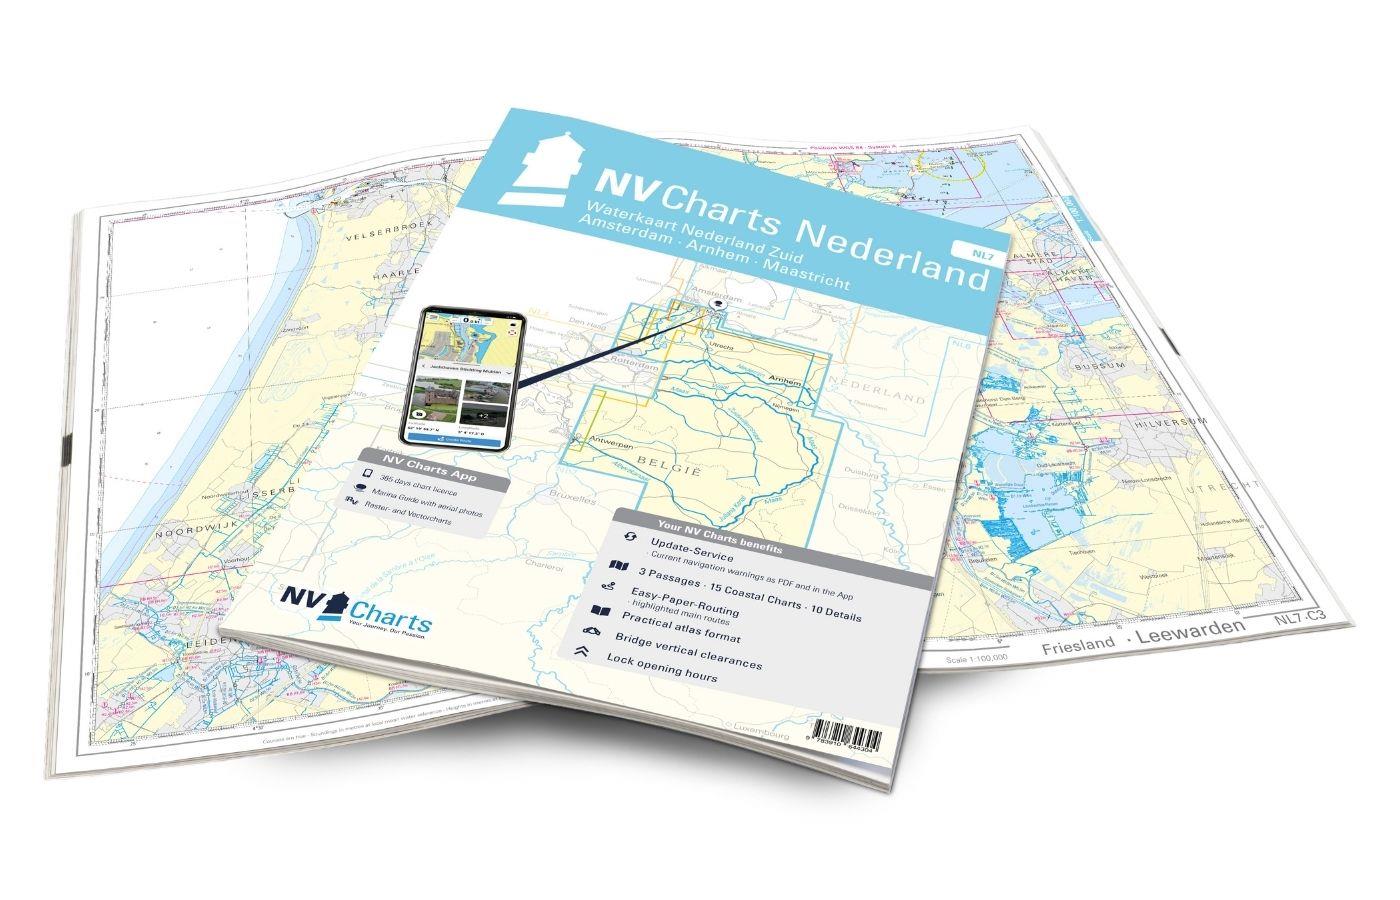 NV Charts Nederland NL7 - Waterkaart Nederland Zuid - Amsterdam - Arnhem - Maastricht